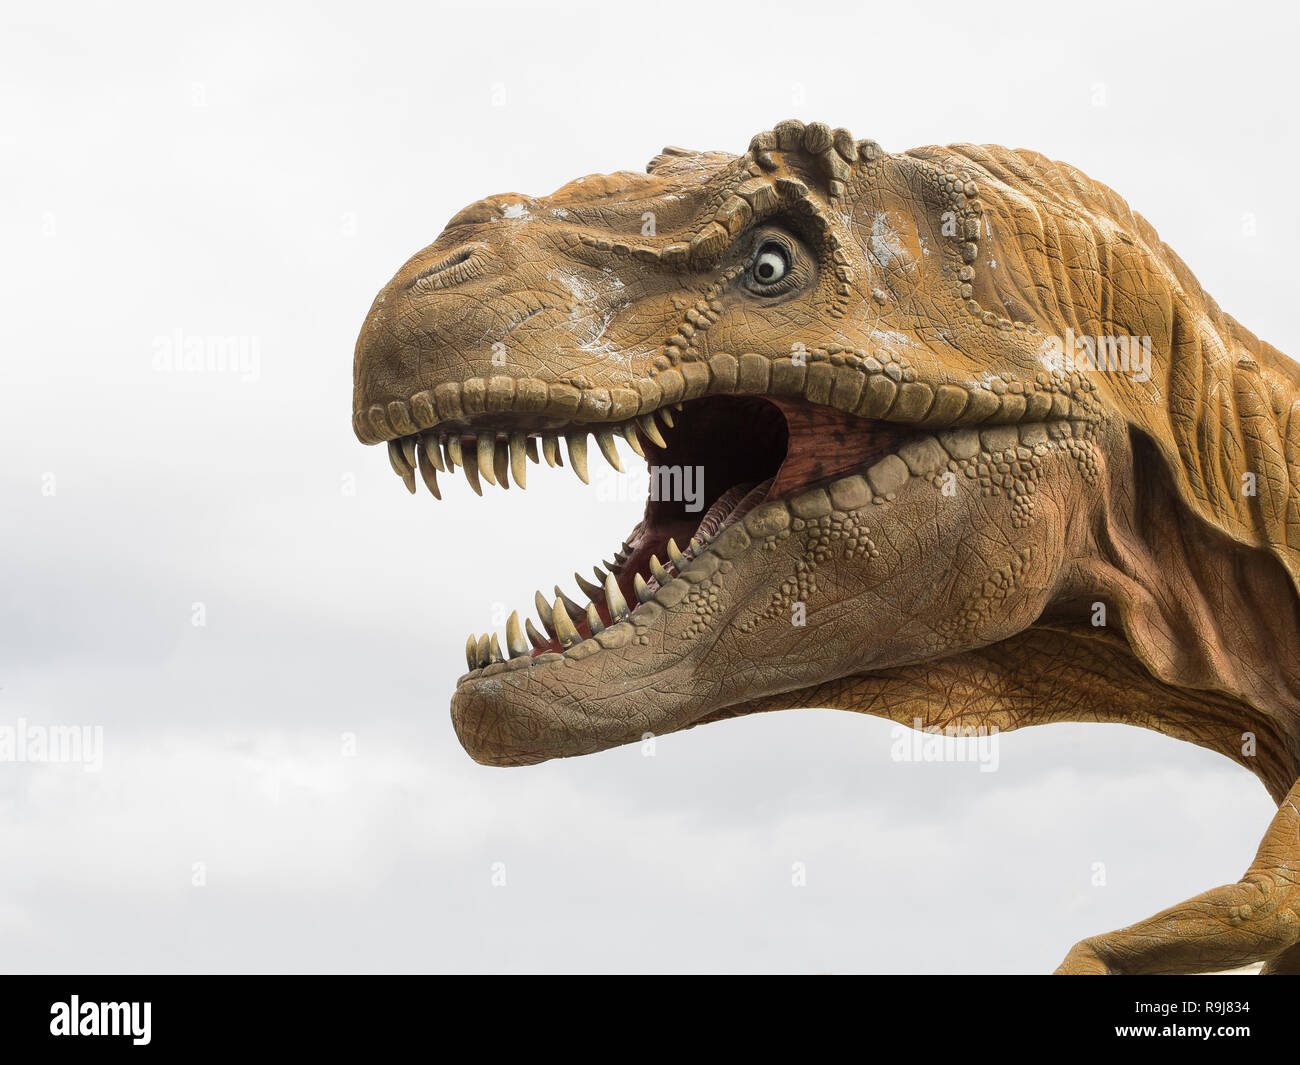 Profil de la tête d'un Tyrannosaurus rex (T-rex), modèle plus grand dinosaure carnivore, fond blanc Banque D'Images